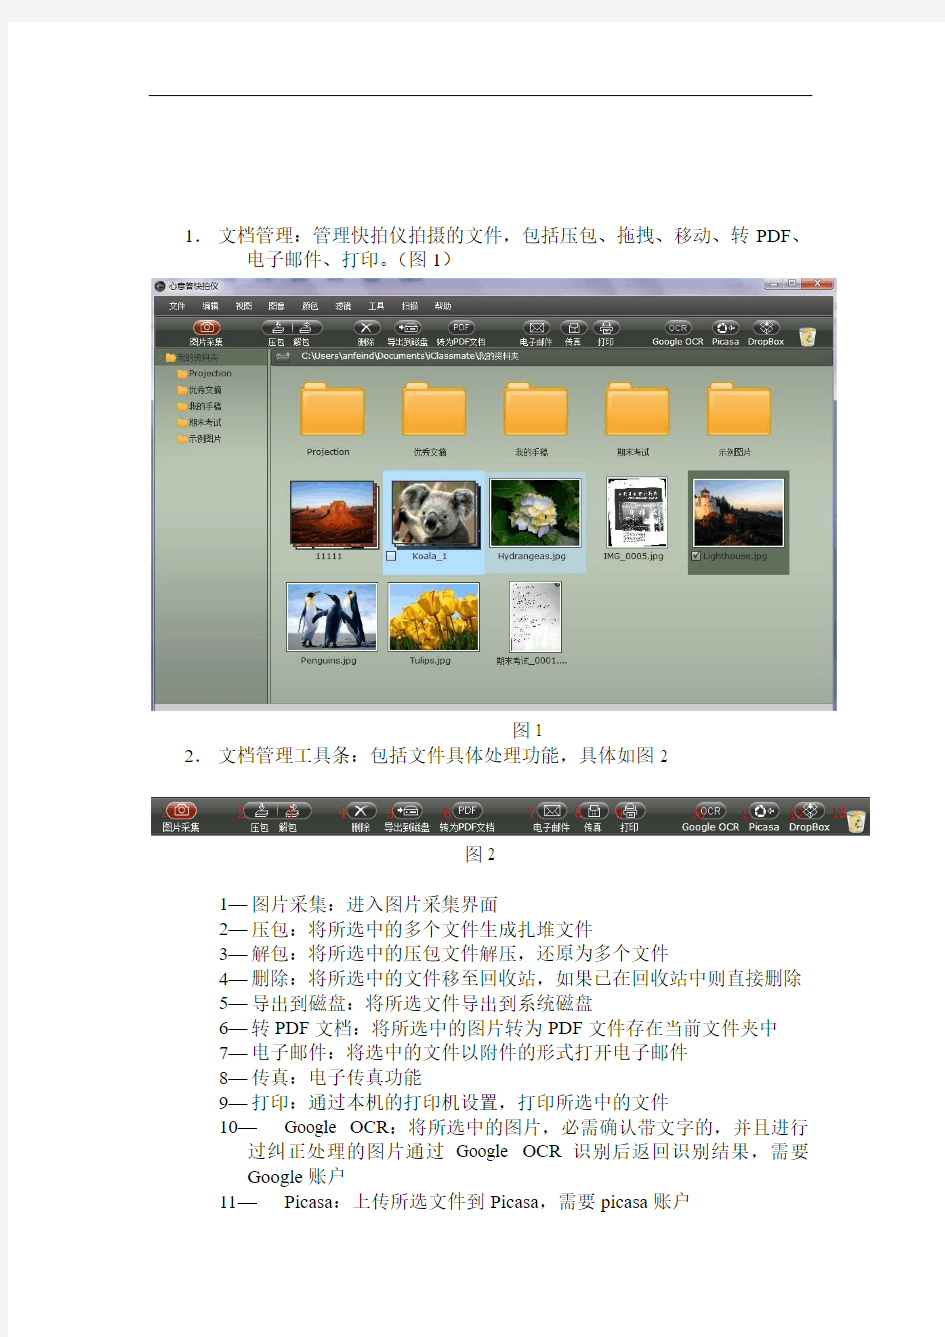 拍摄式高速文档扫描软件——操作手册